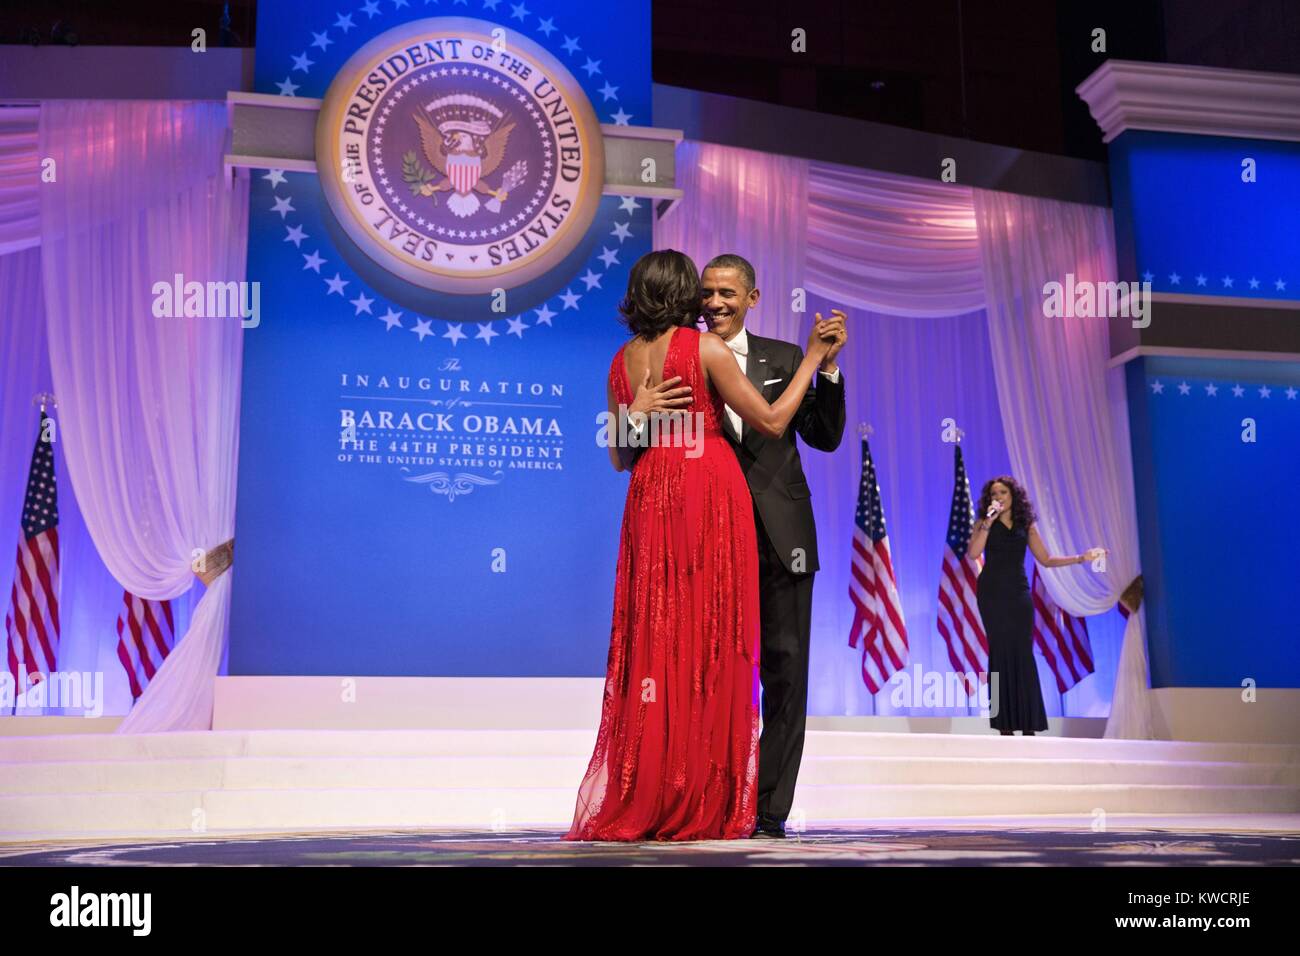 Präsident Barack und Michelle Obama Tanz an der Oberbefehlshaber der Eröffnungs-Kugel. Jan 21, 2013. Sie tanzten zu "Wir bleiben zusammen." von Jennifer Hudson (rechts). Rot Abendkleid der First Lady wurde von Jason Wu konzipiert. (BSLOC 2015 3 48) Stockfoto